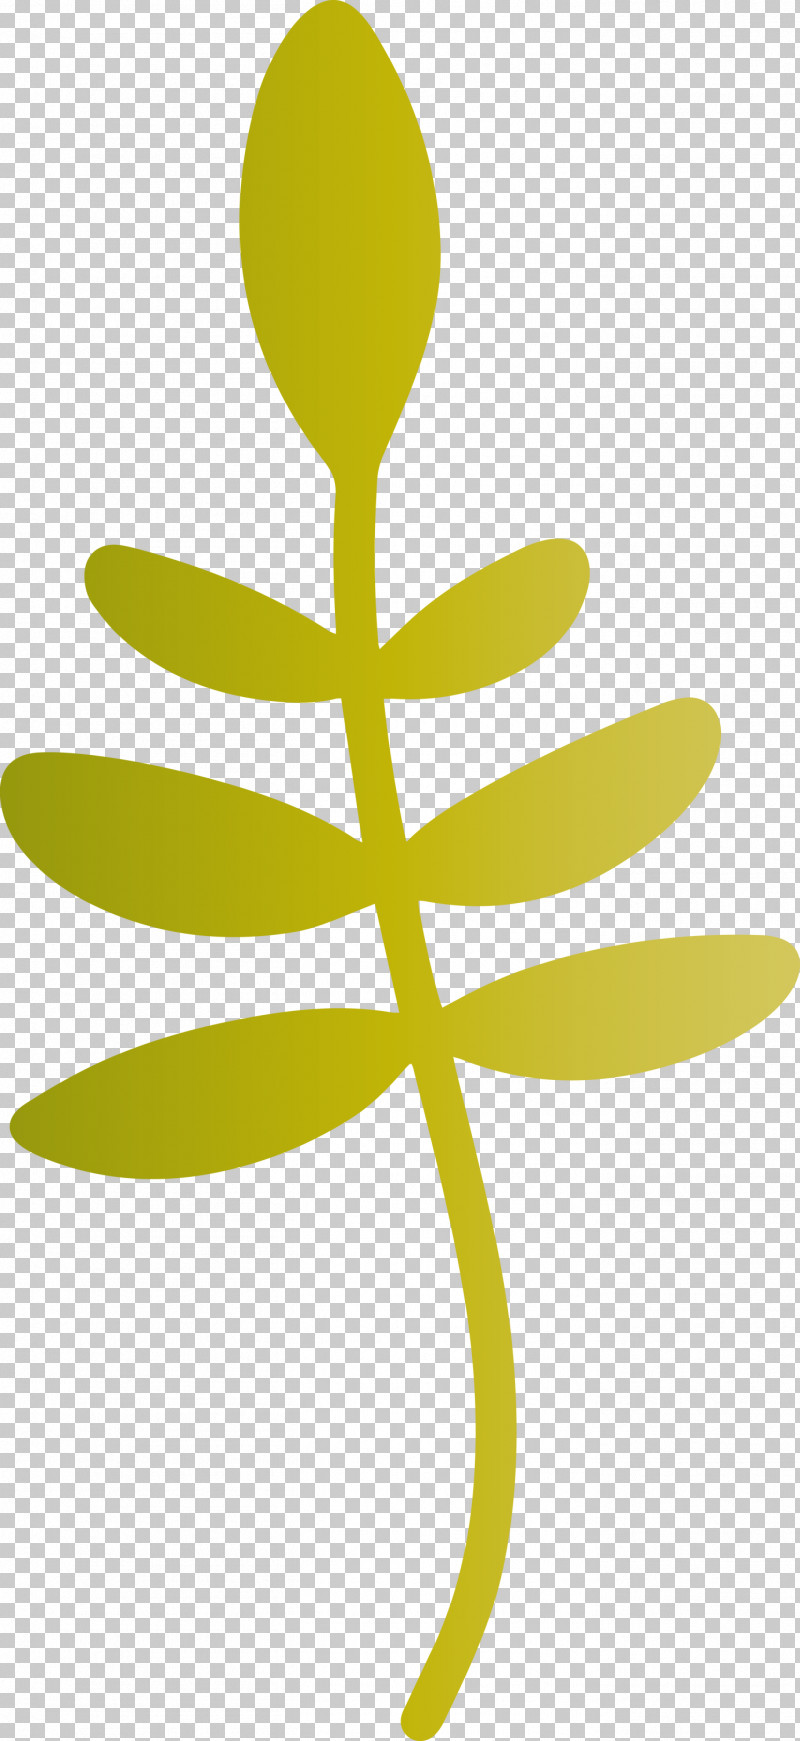 Leaf Plant Stem Flower Petal Tree PNG, Clipart, Flora, Flower, Leaf, Line, Petal Free PNG Download